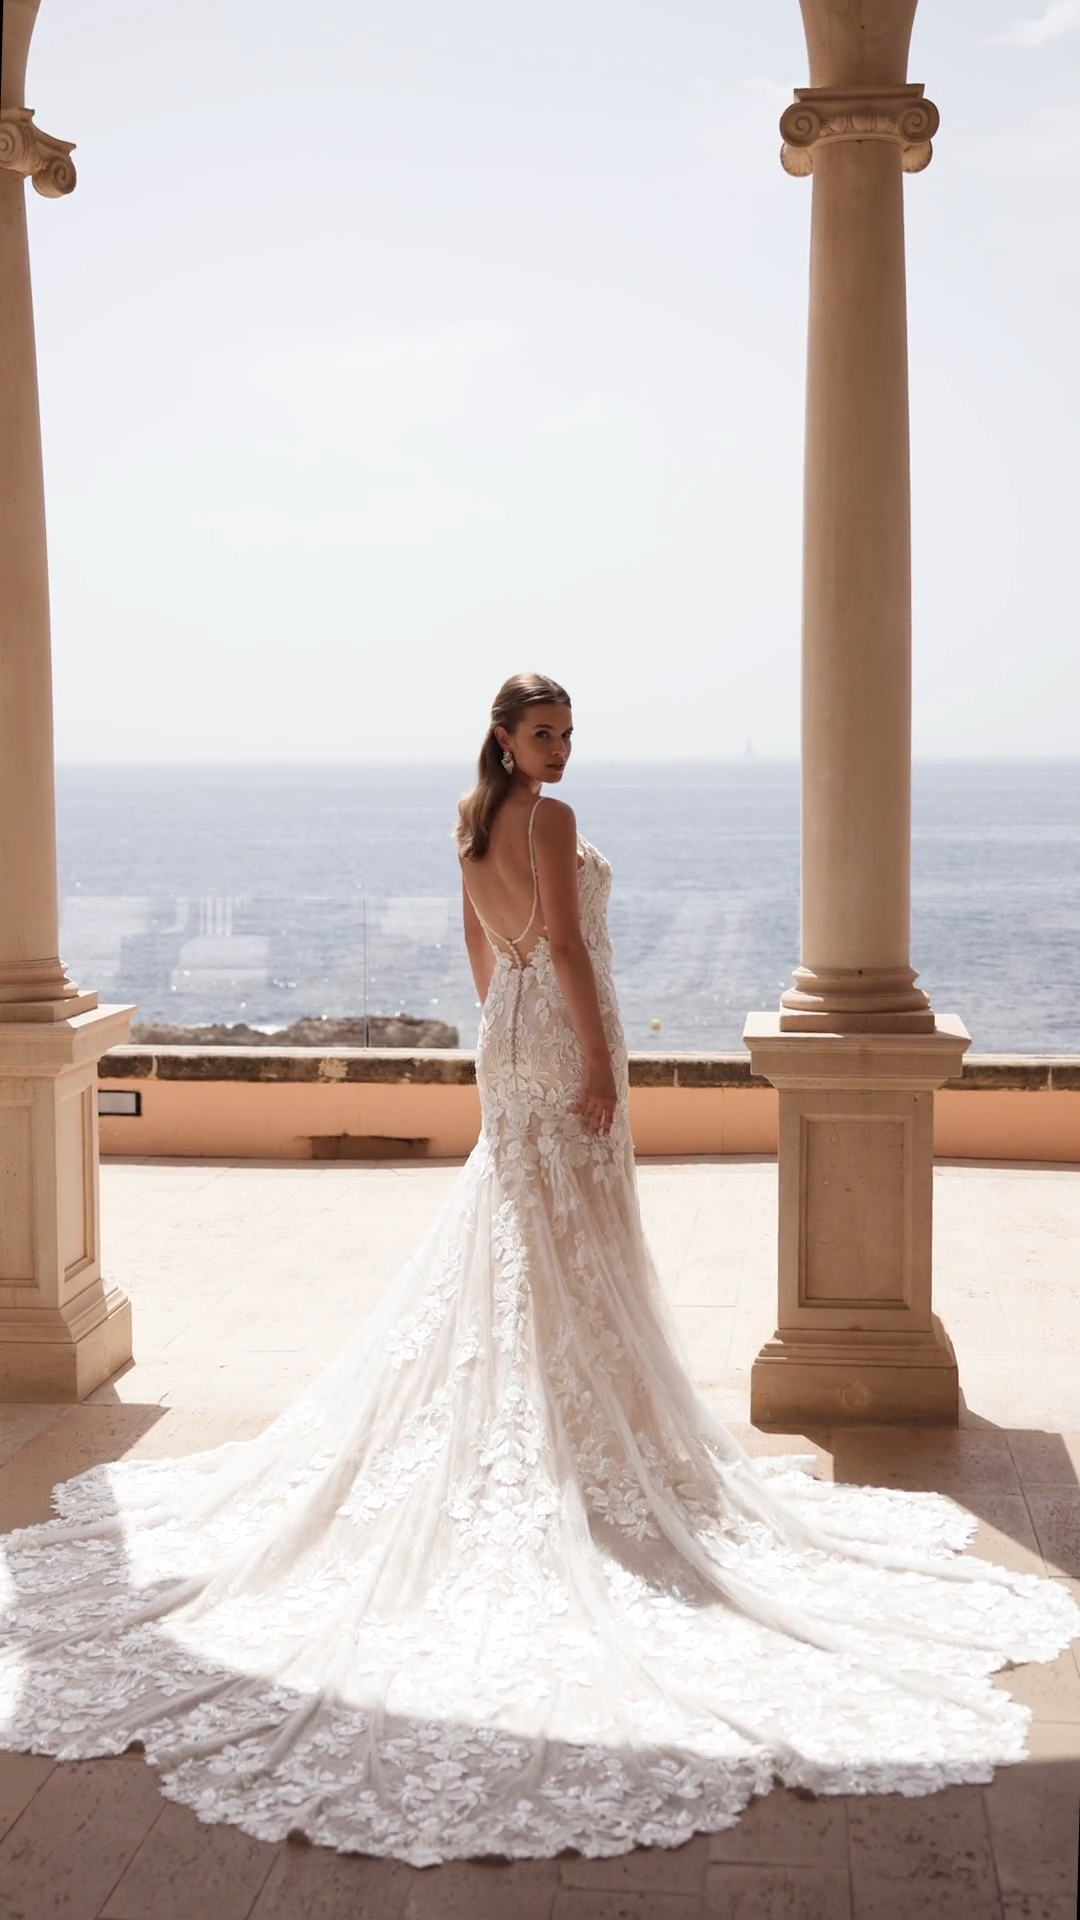 ValStefani OLIVIA lavish designer wedding dresses for the fancy bride